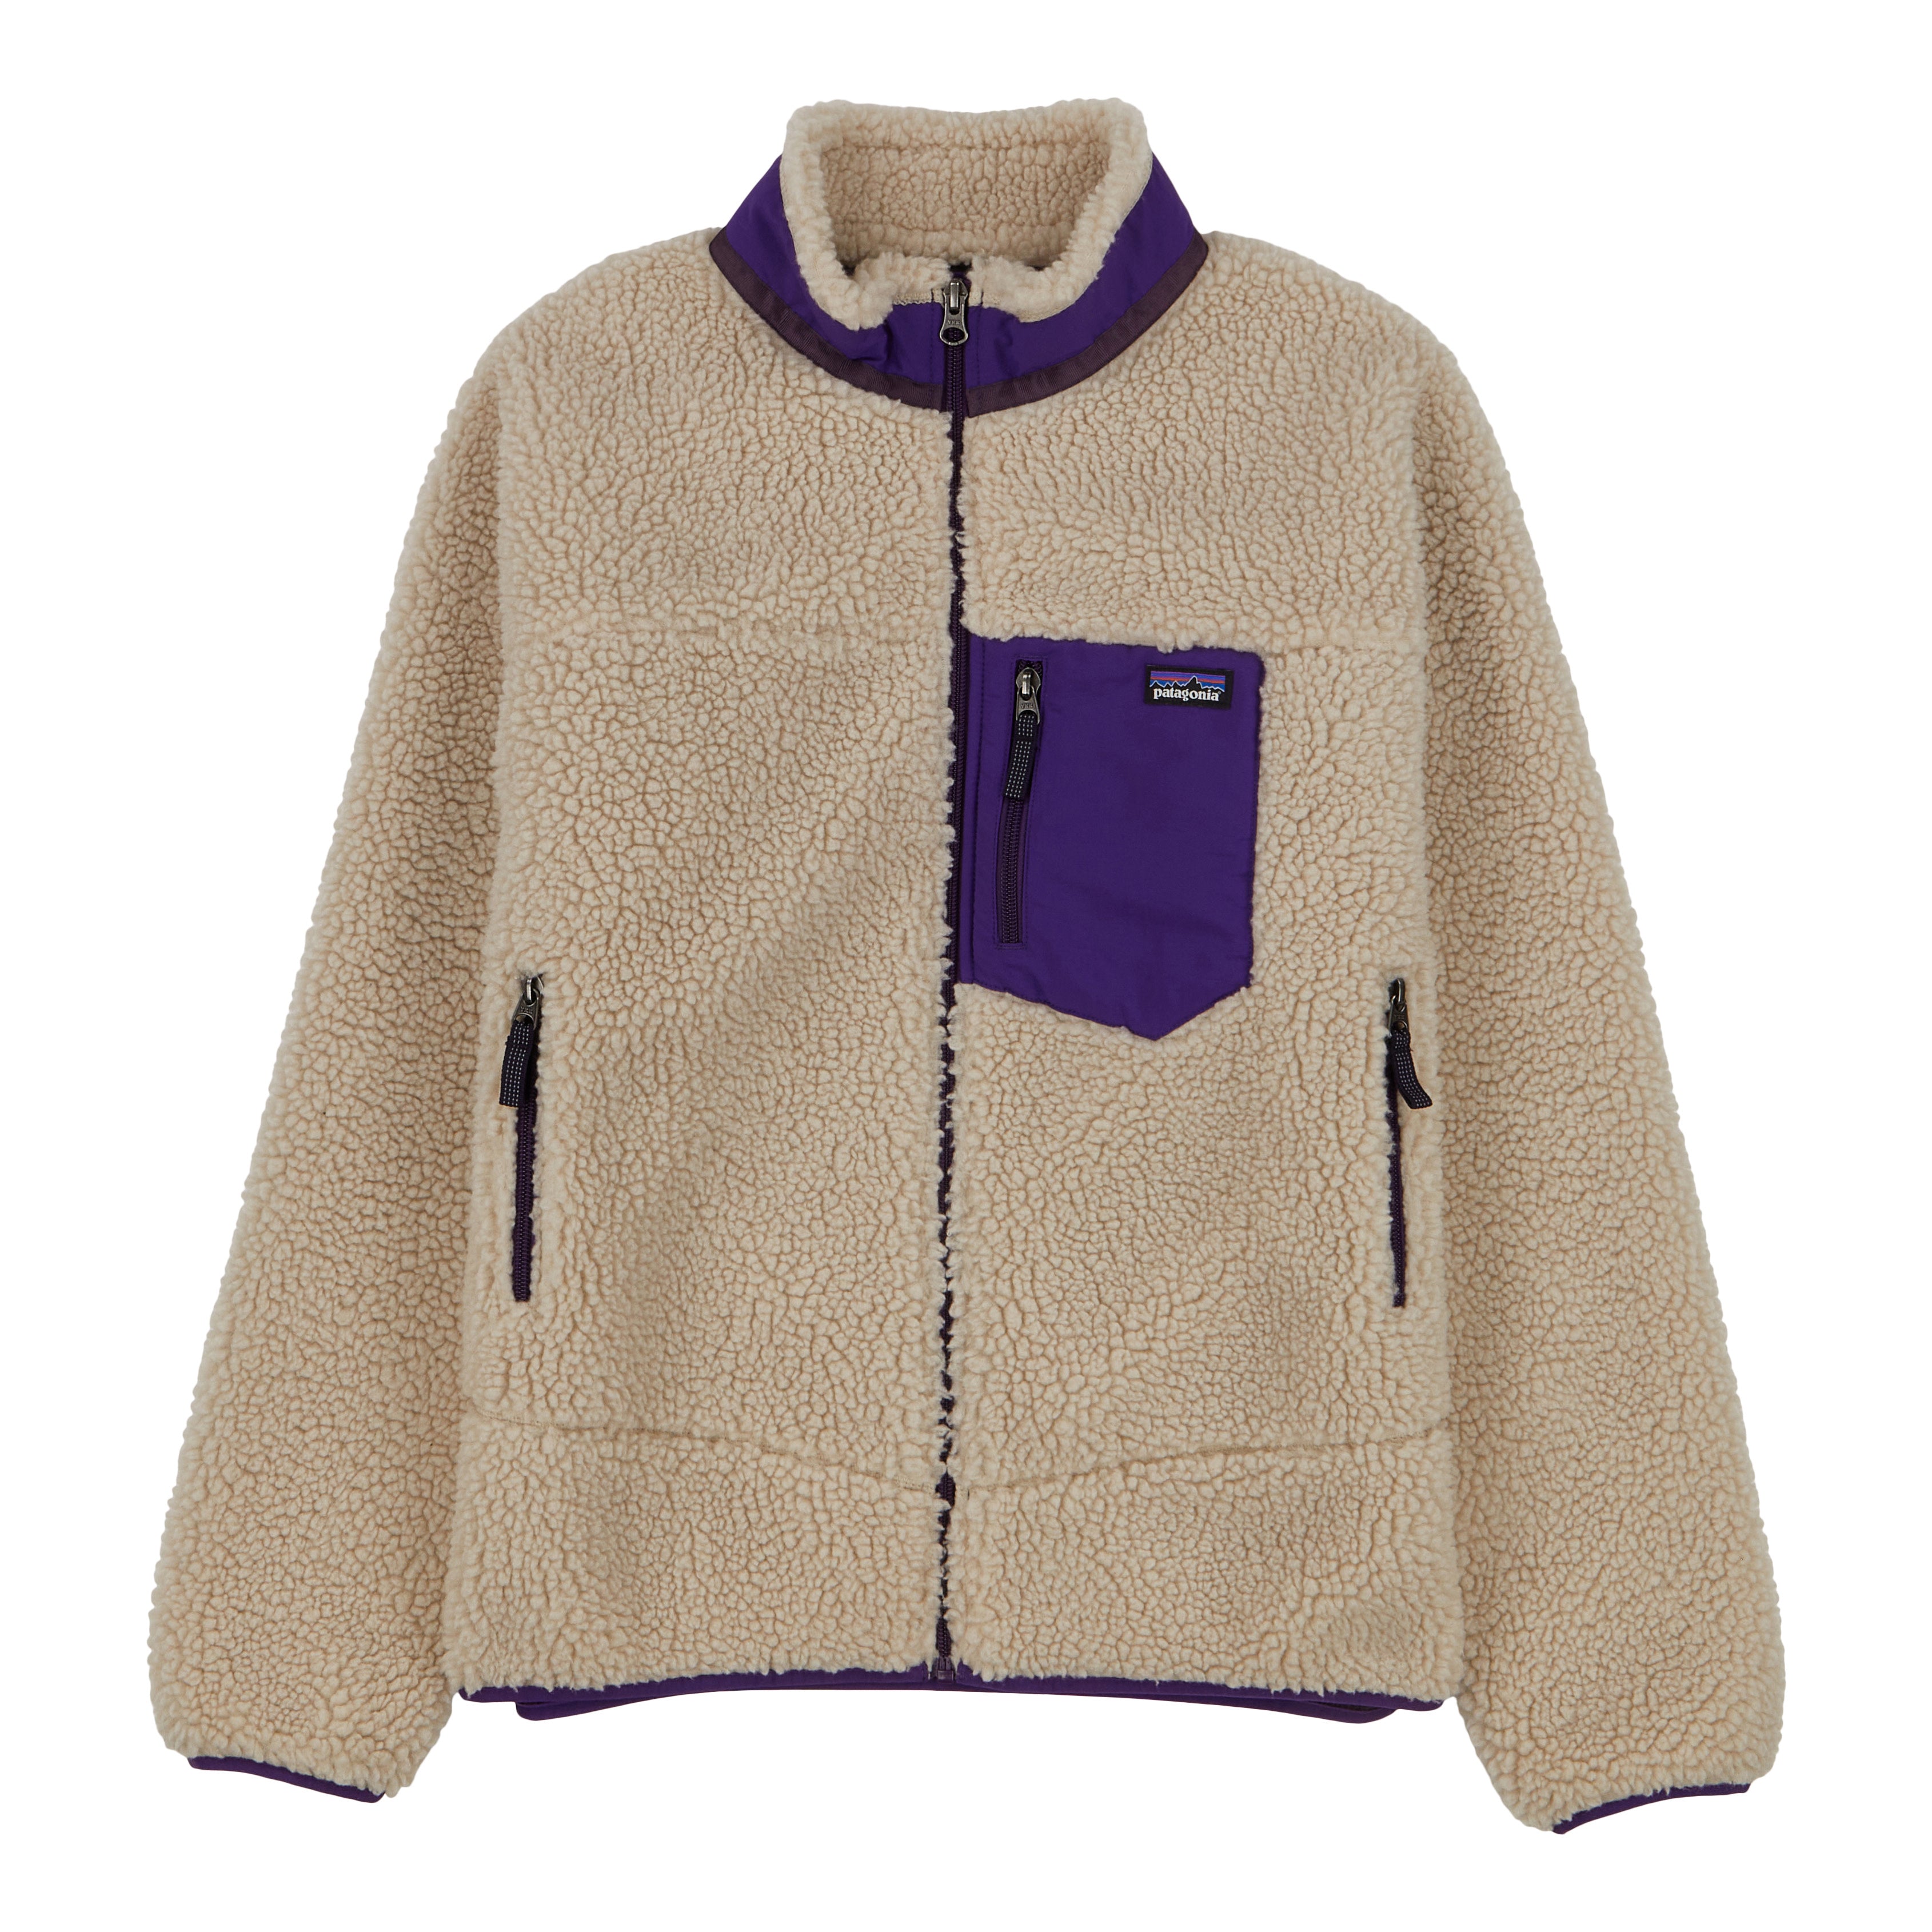 Kids' Retro-X® Jacket – Patagonia Worn Wear